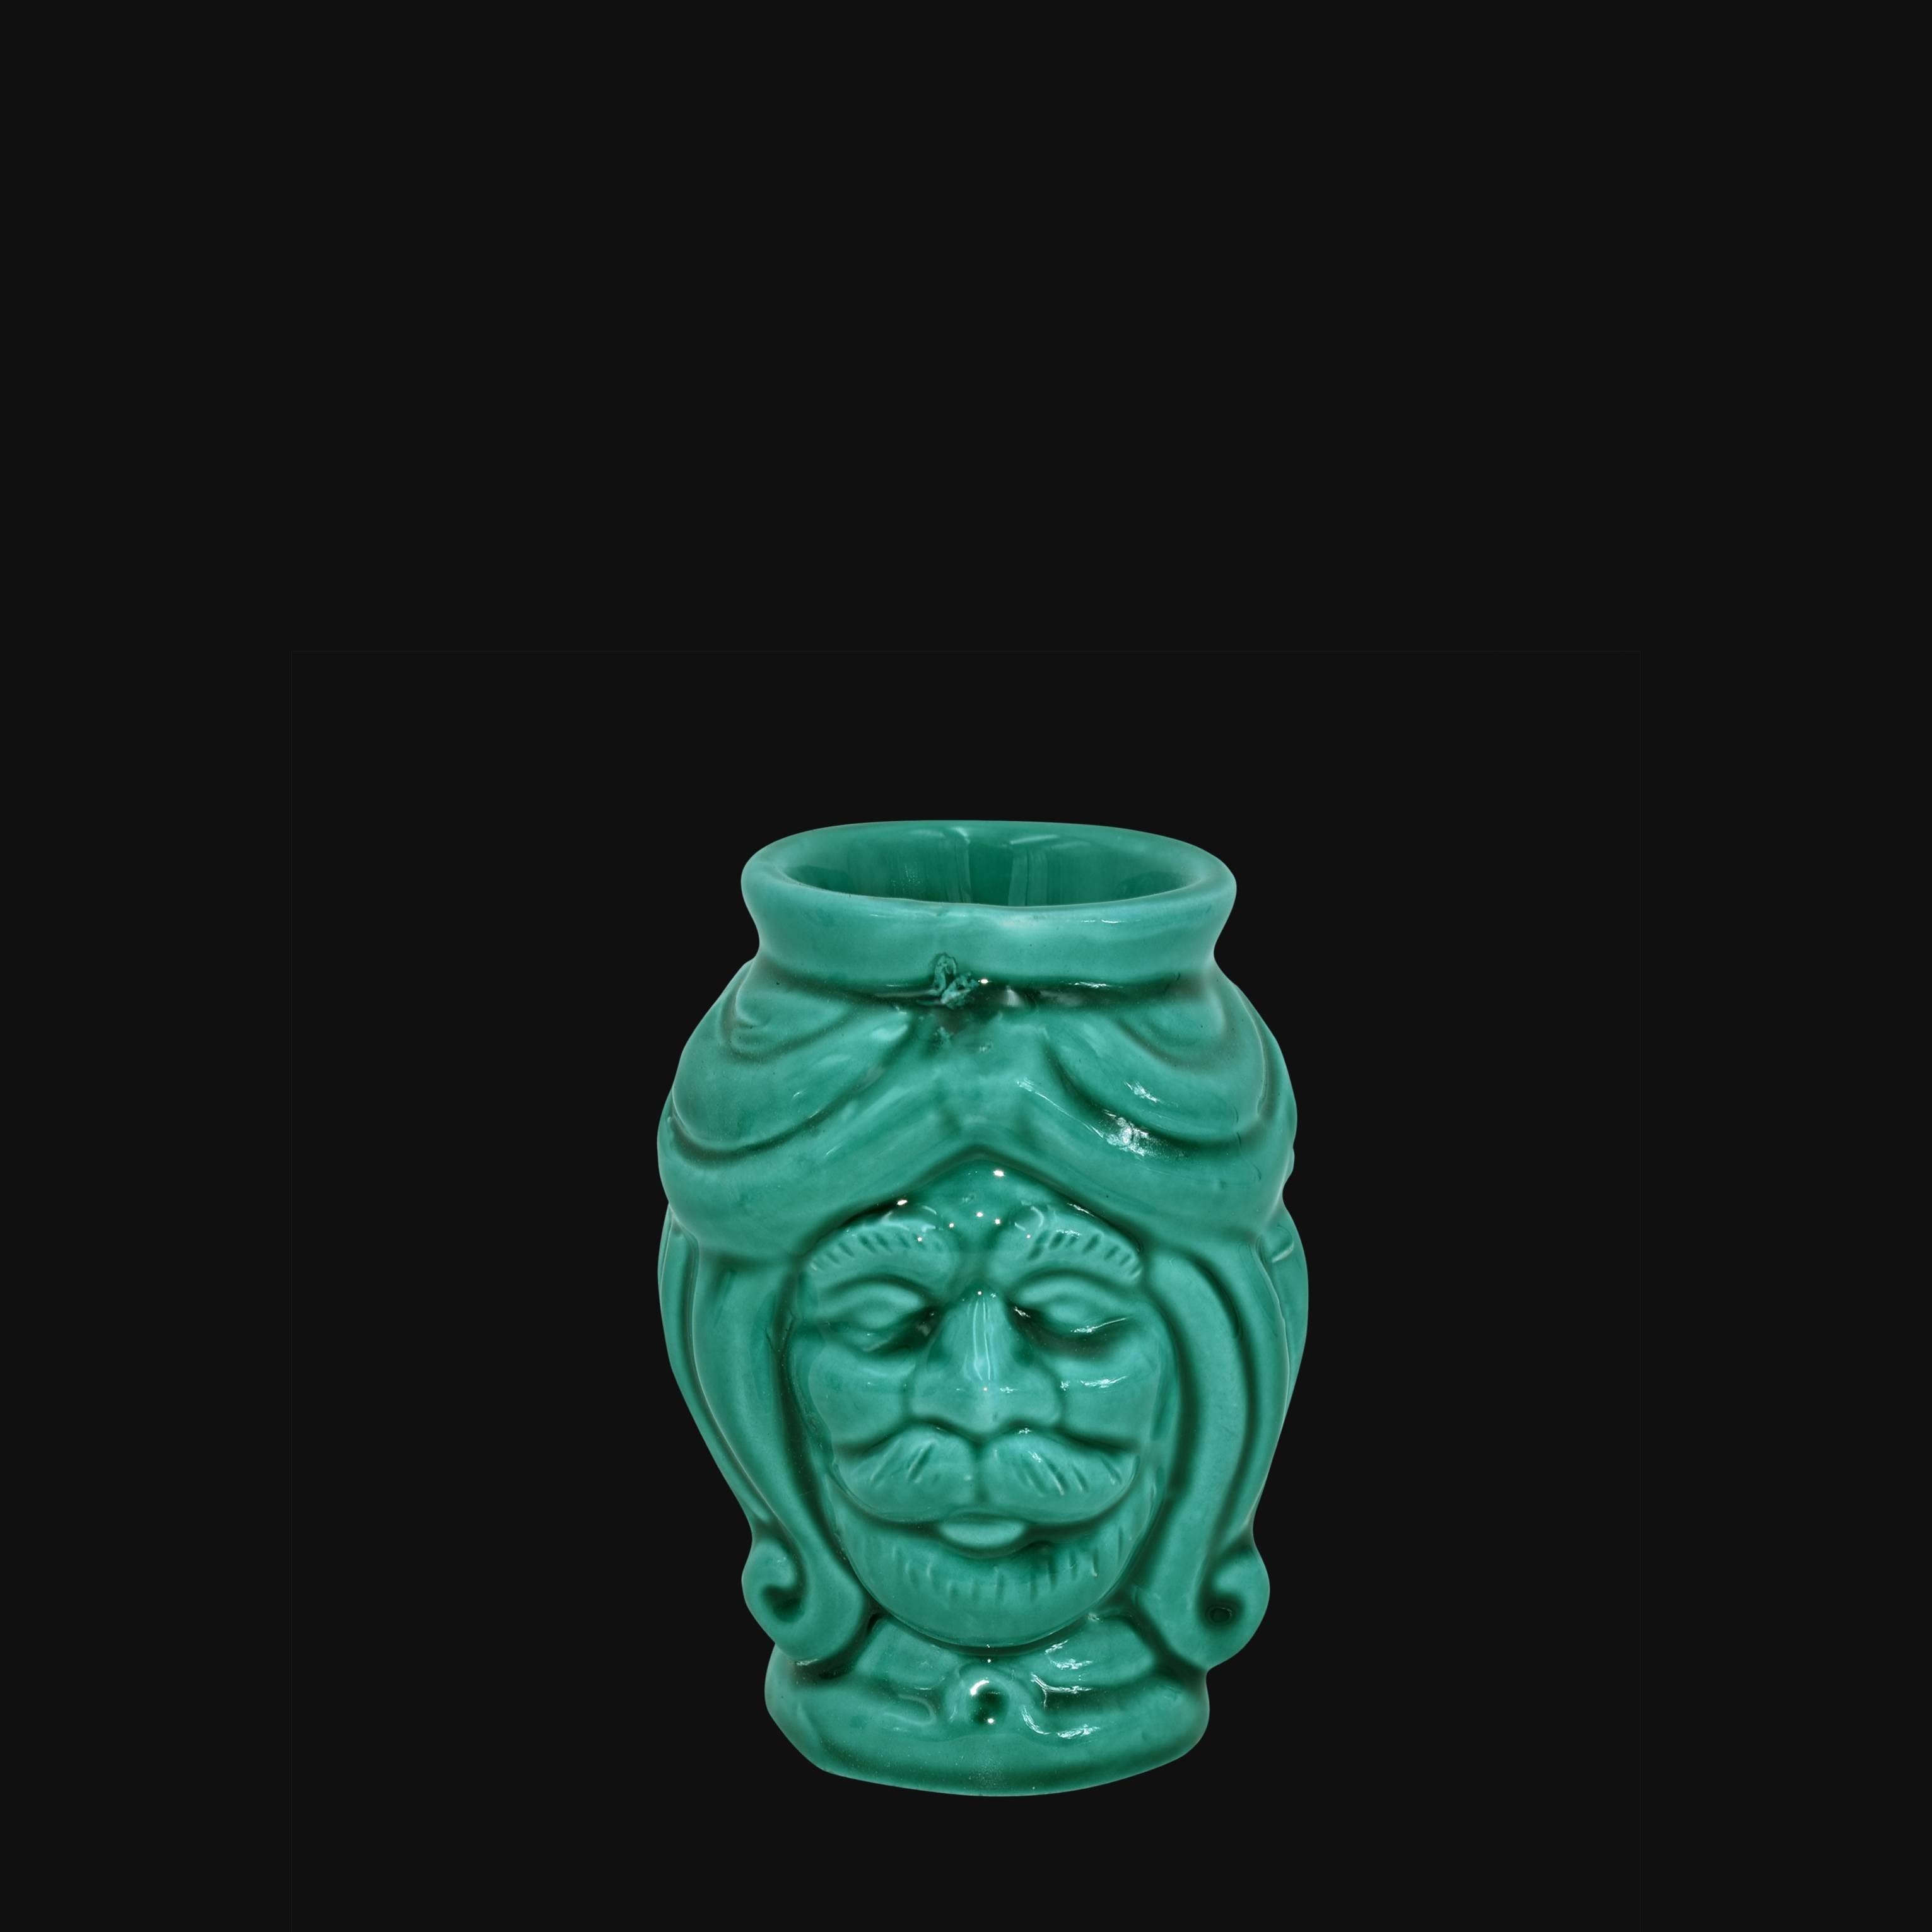 Testa h 10 Verde Smeraldo maschio - Ceramiche di Caltagirone Sofia